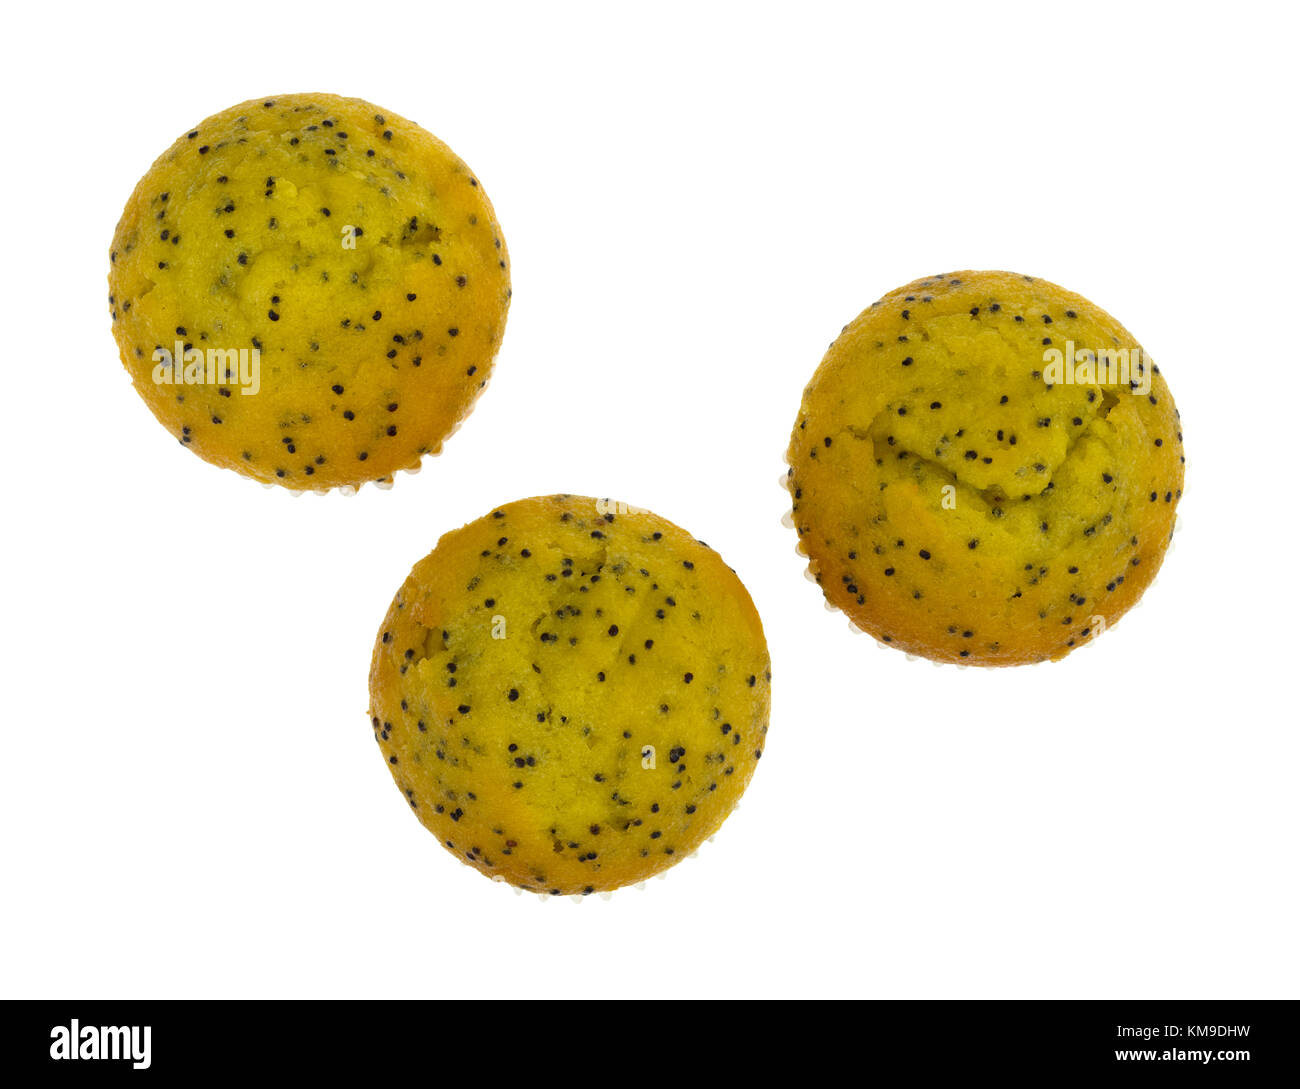 Vista superiore di tre dimensioni del morso di limone semi di papavero muffin isolato su uno sfondo bianco. Foto Stock